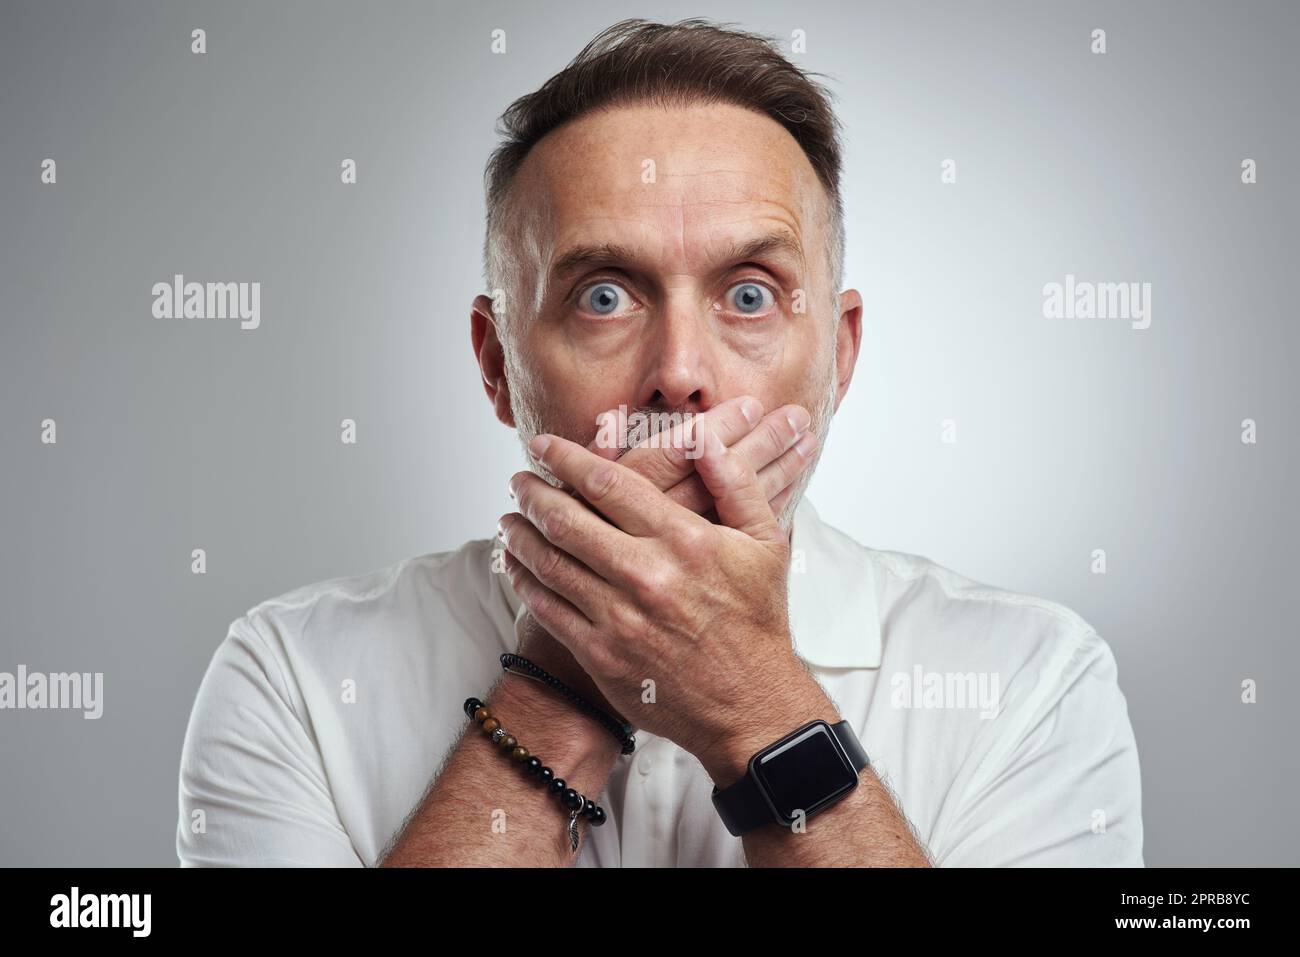 Hoppla, das sollte ich Ihnen eigentlich nicht sagen. Studioporträt eines reifen Mannes, der seinen Mund bedeckt und schockiert vor grauem Hintergrund aussieht. Stockfoto